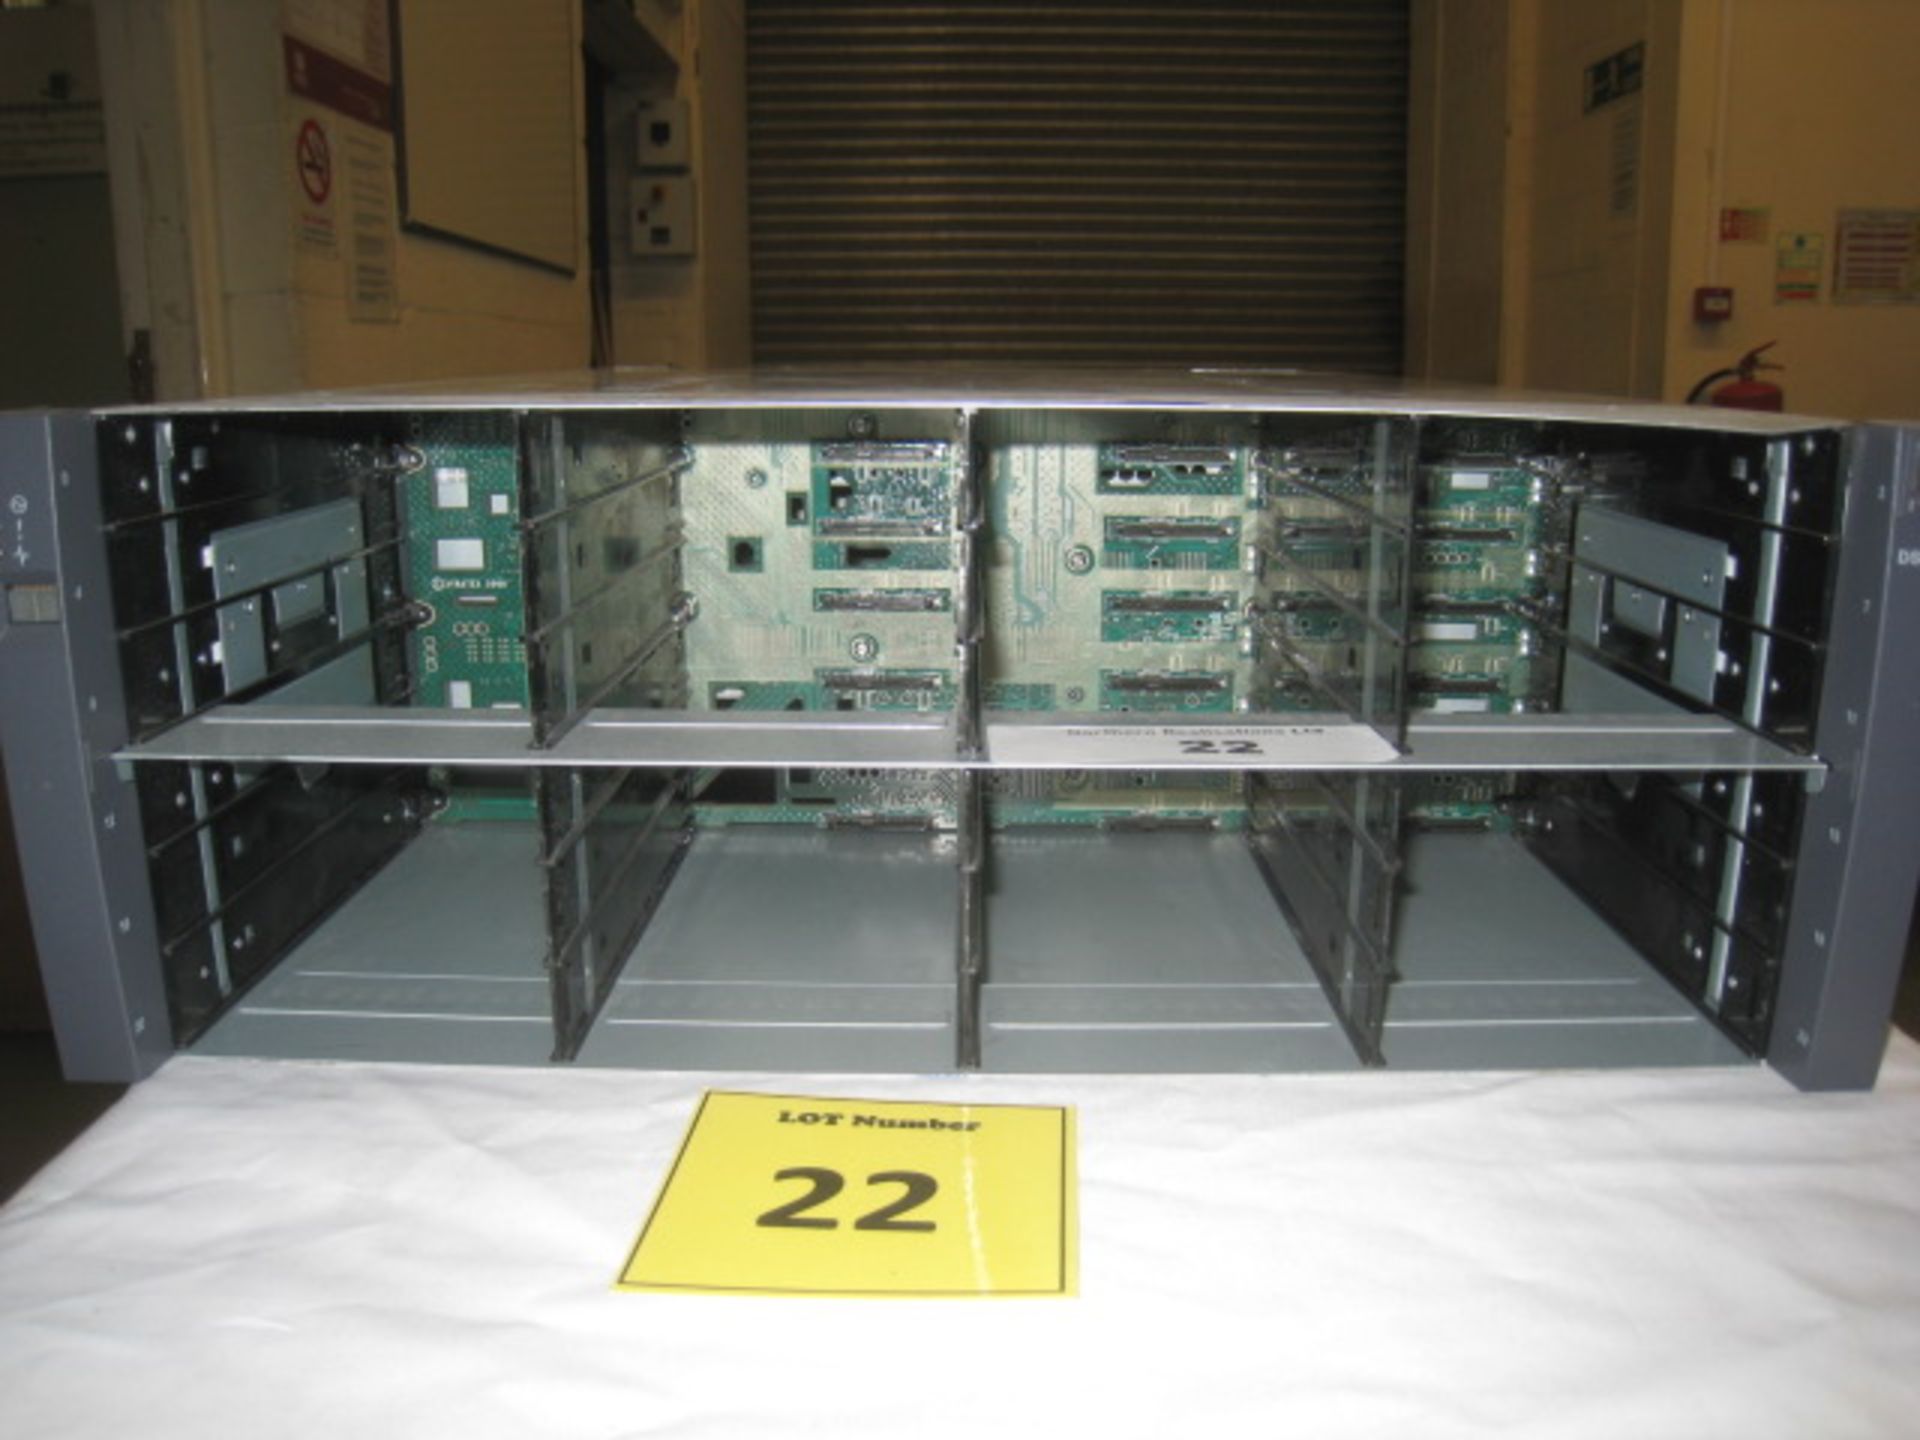 1 X NetApp NAJ-0801 24 Bay Hard Drive Storage Array with 2 x IOM3 Modules & 4 x Power Supplies. NO